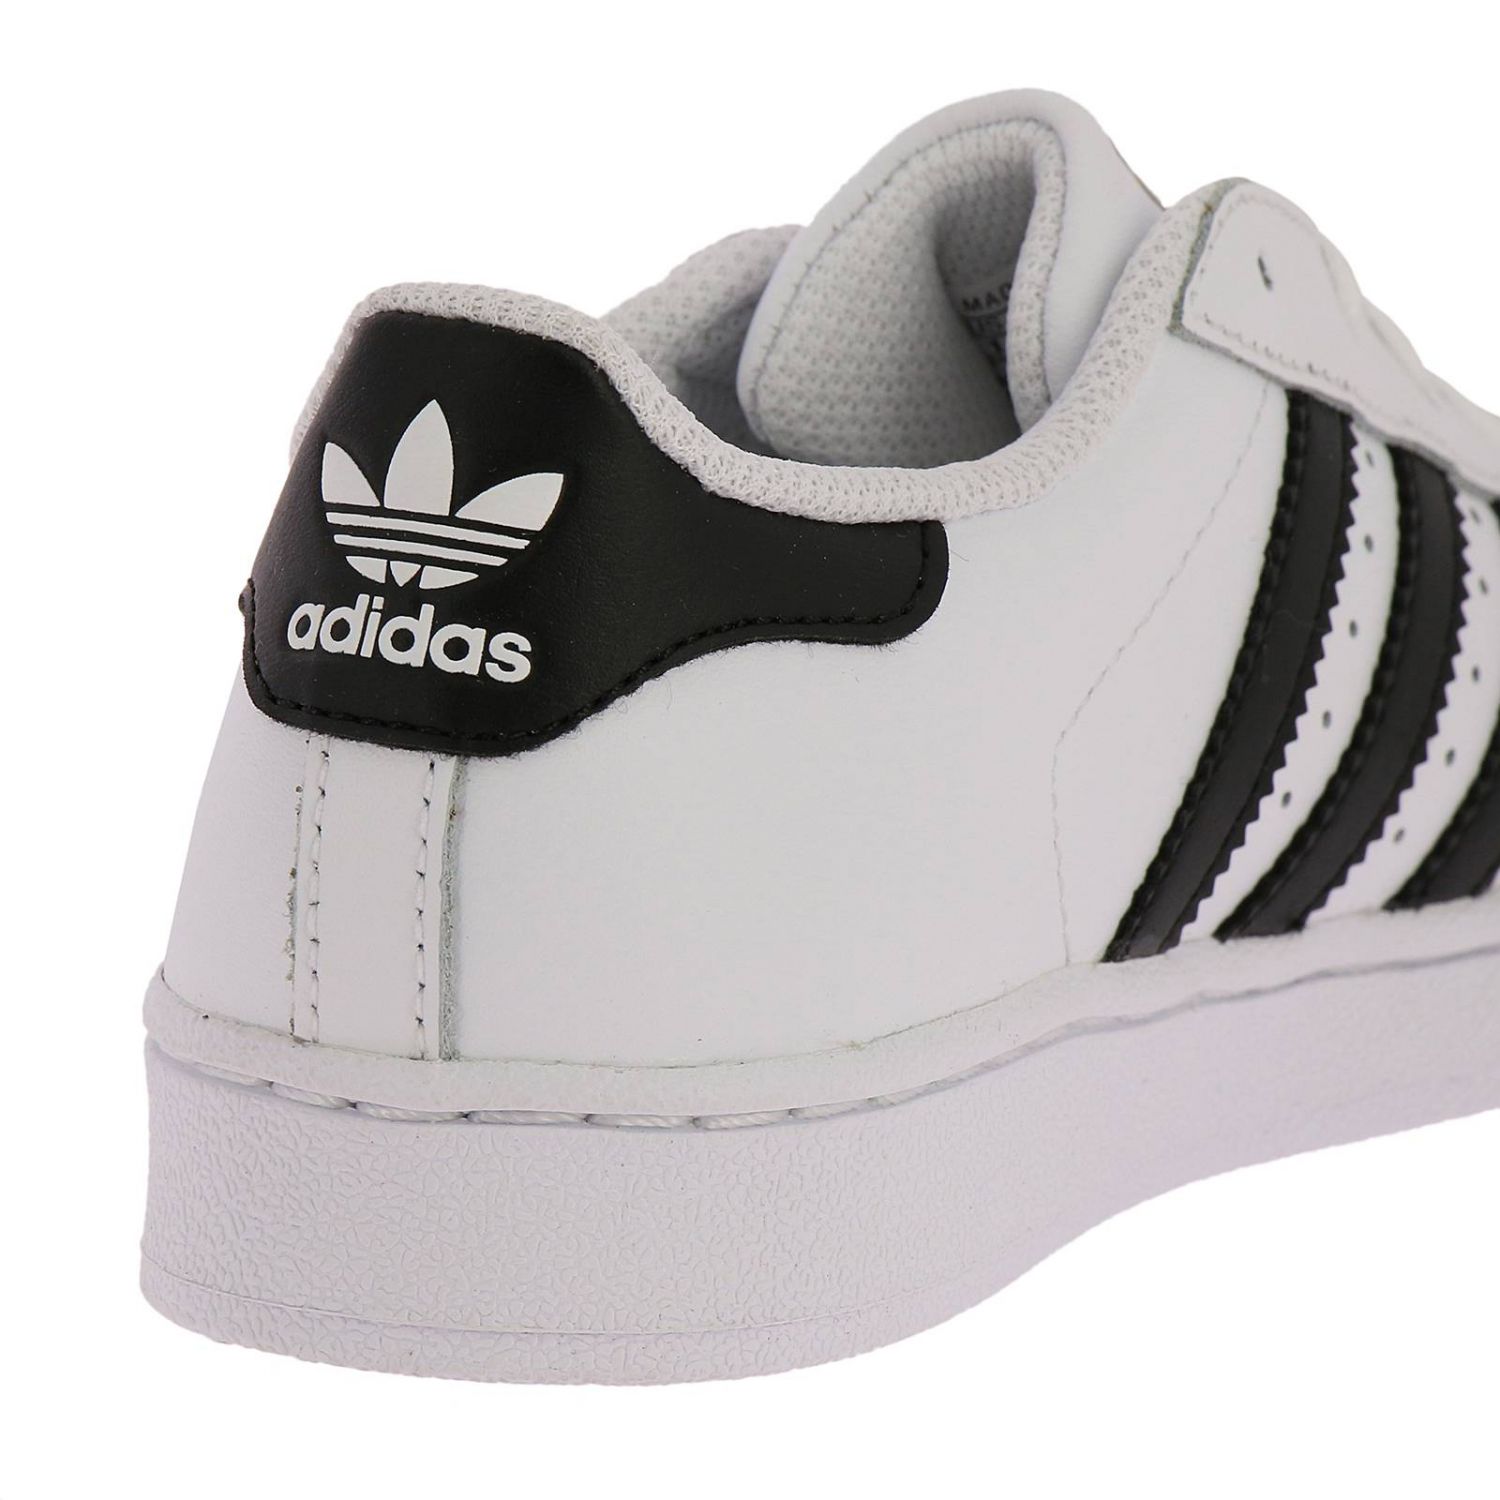 Adidas Originals Outlet: Shoes kids - White | Shoes Adidas Originals ...